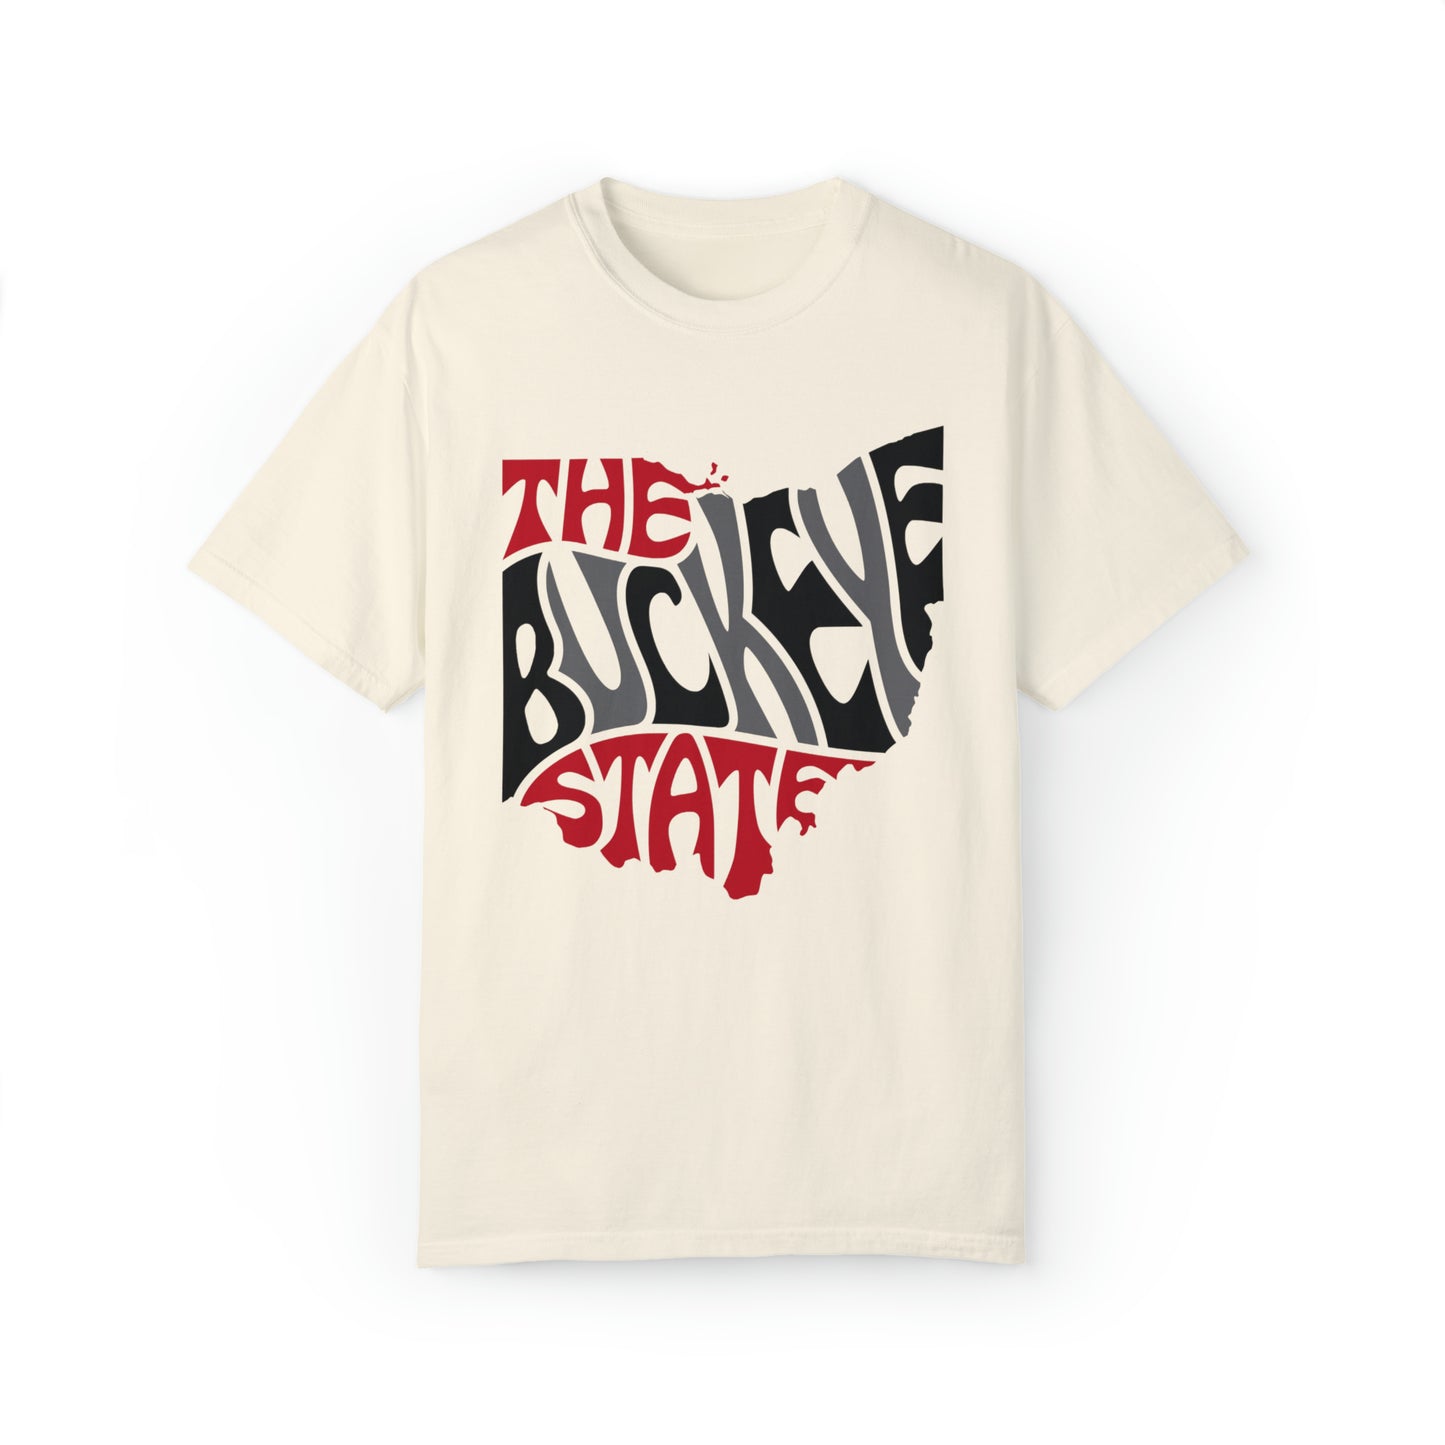 The Buckeye State Shirt